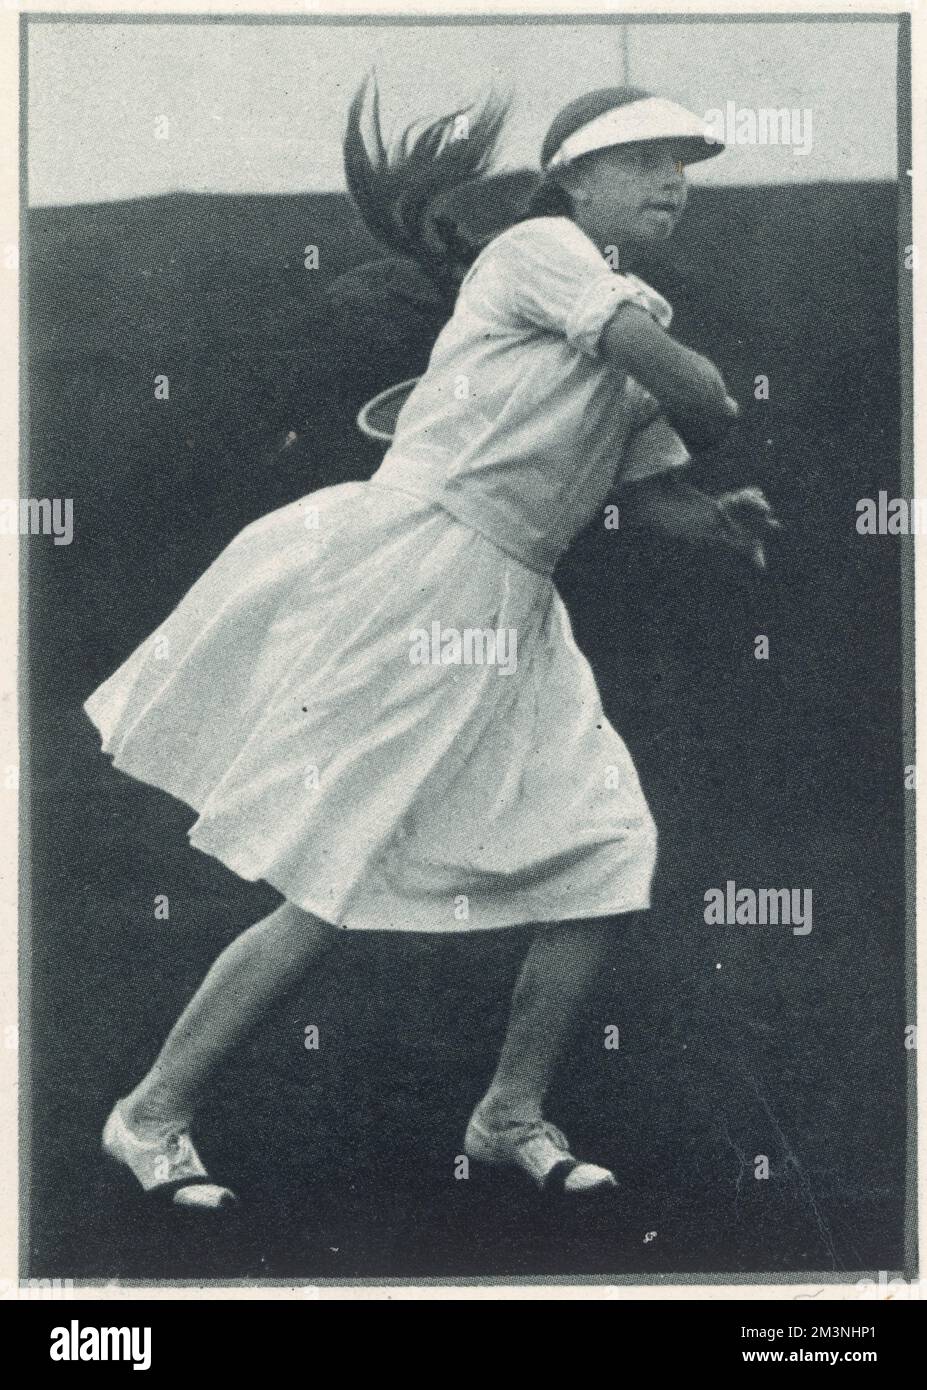 Helen Wills Moody (1905 - 1998), tenista estadounidense y ocho veces campeona de Wimbledon, fotografiada como una joven jugando en la ronda de semifinales del Campeonato Junior en Forest Hills y usando la famosa sombra de ojos o visera que introdujo en la cancha de tenis de césped. 1933 Foto de stock